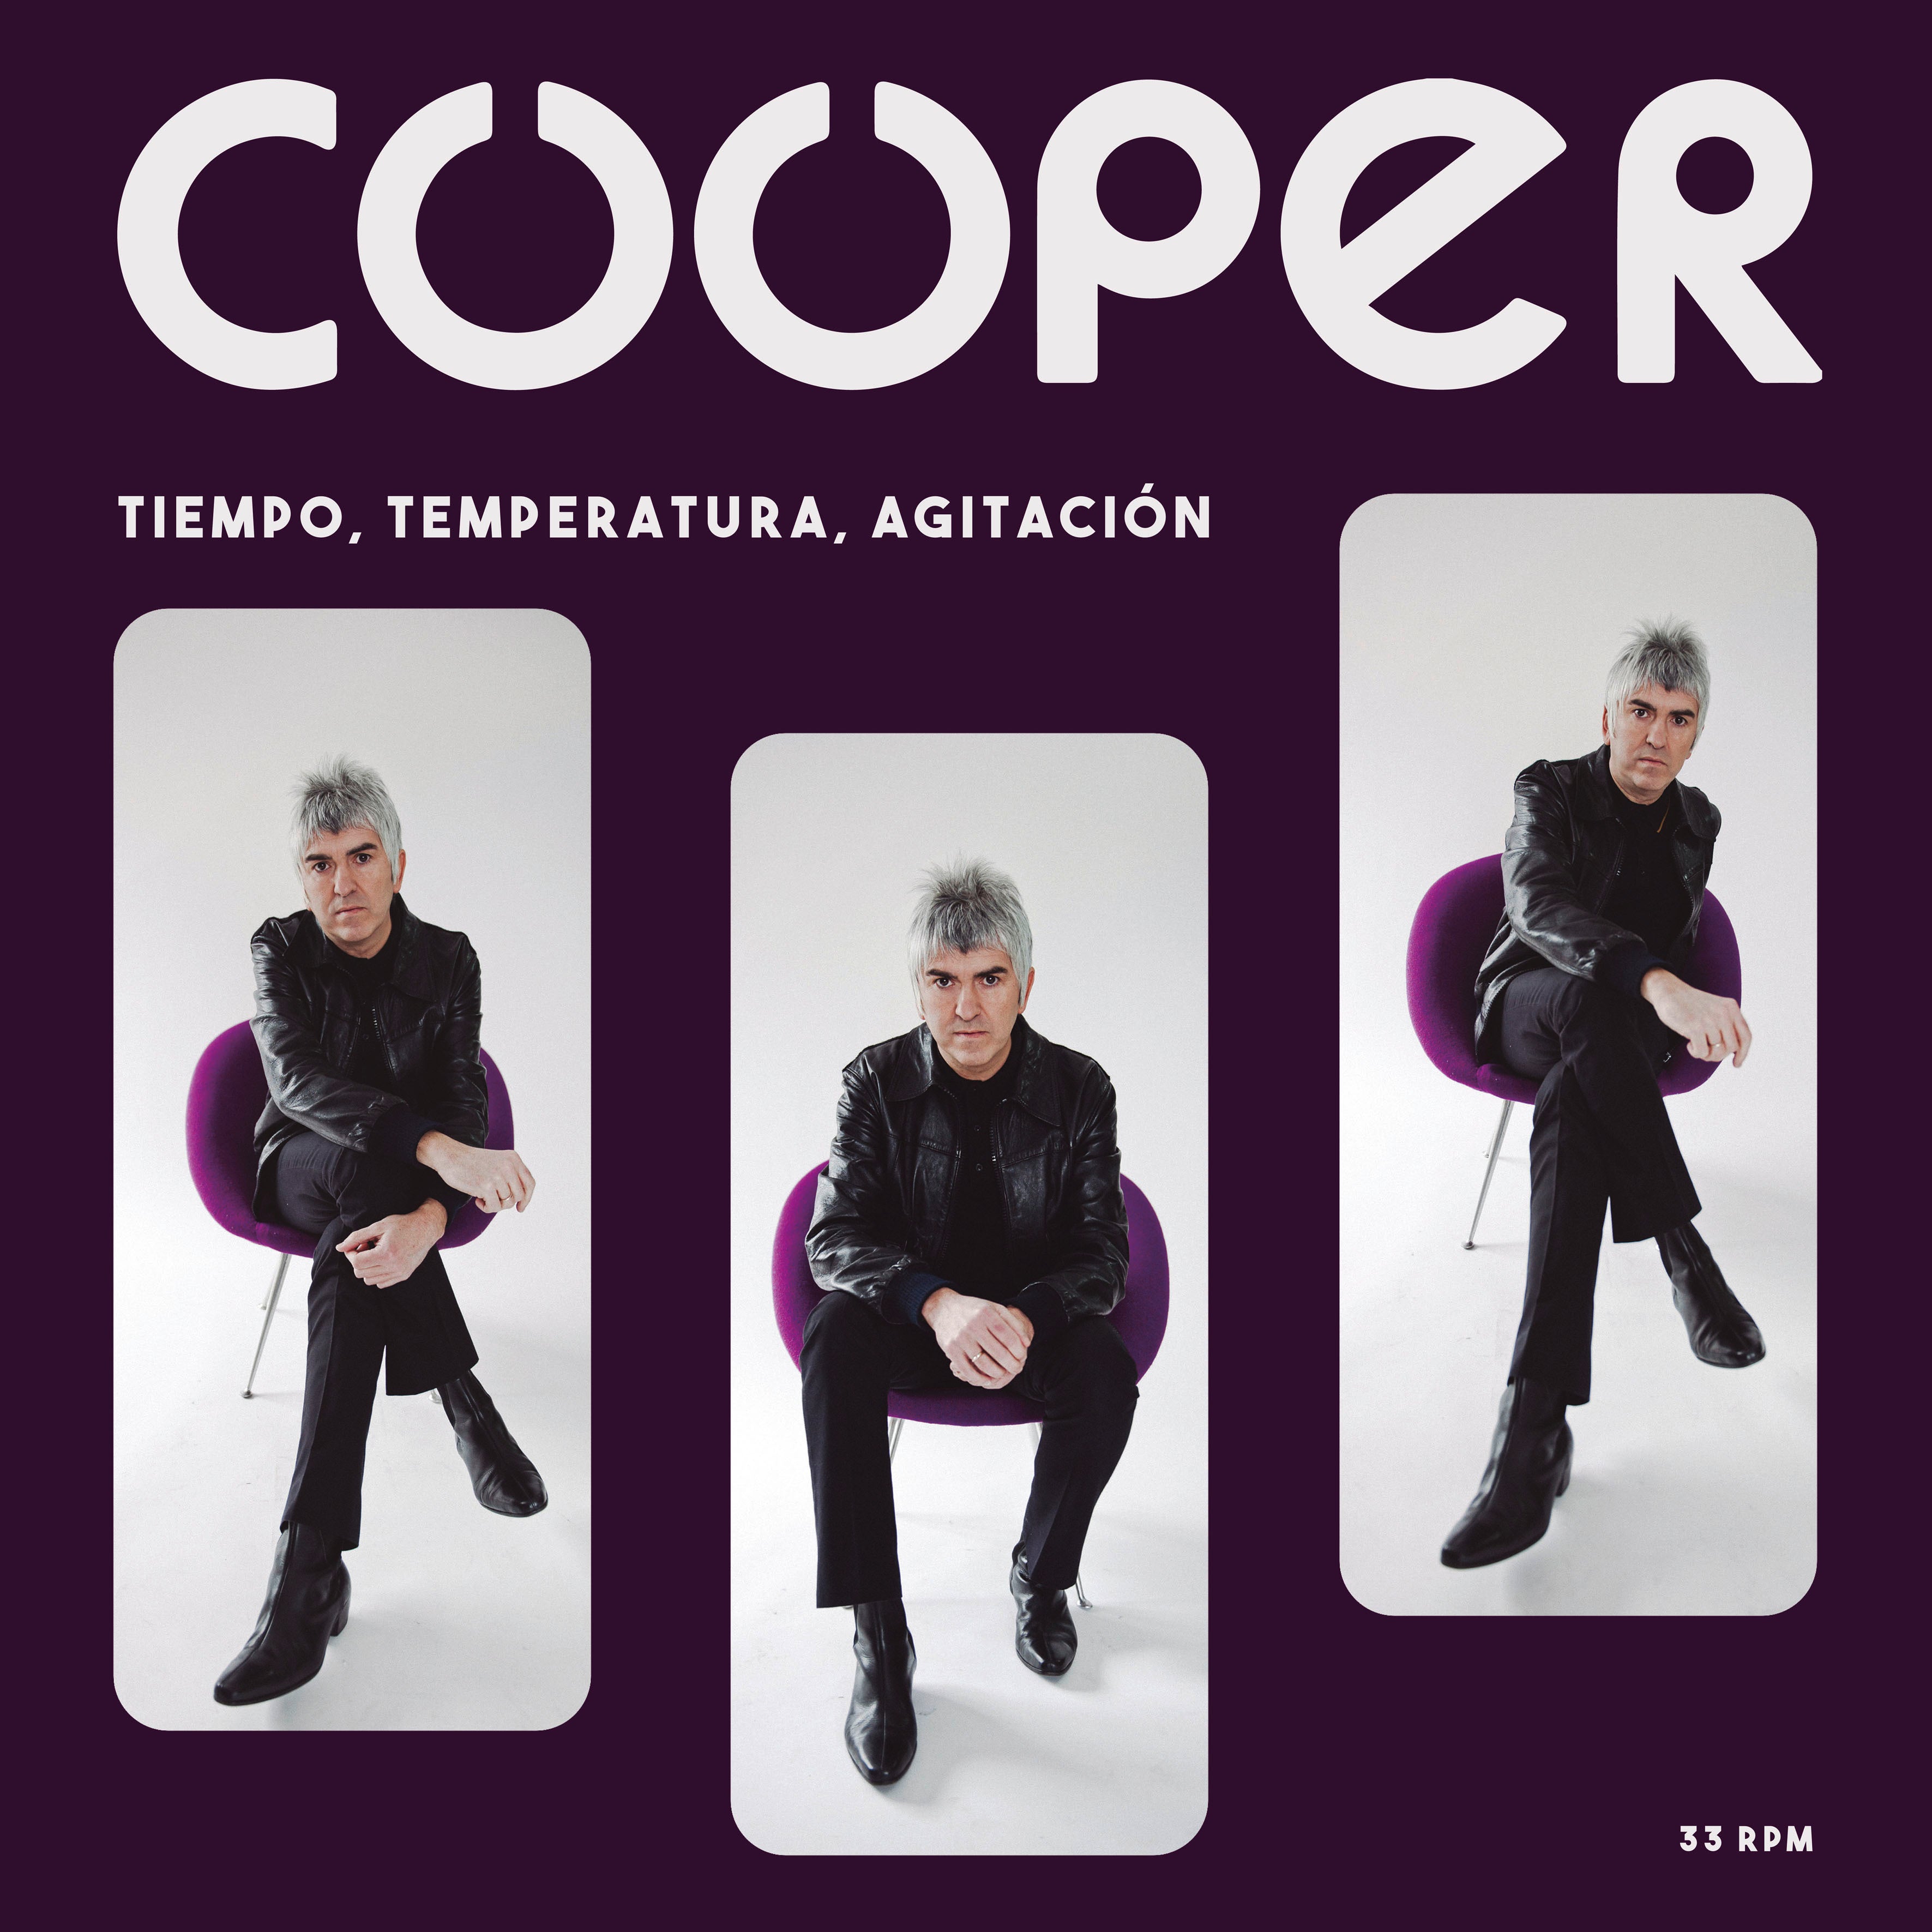 Cooper - Tiempo, Temperatura and Agitación